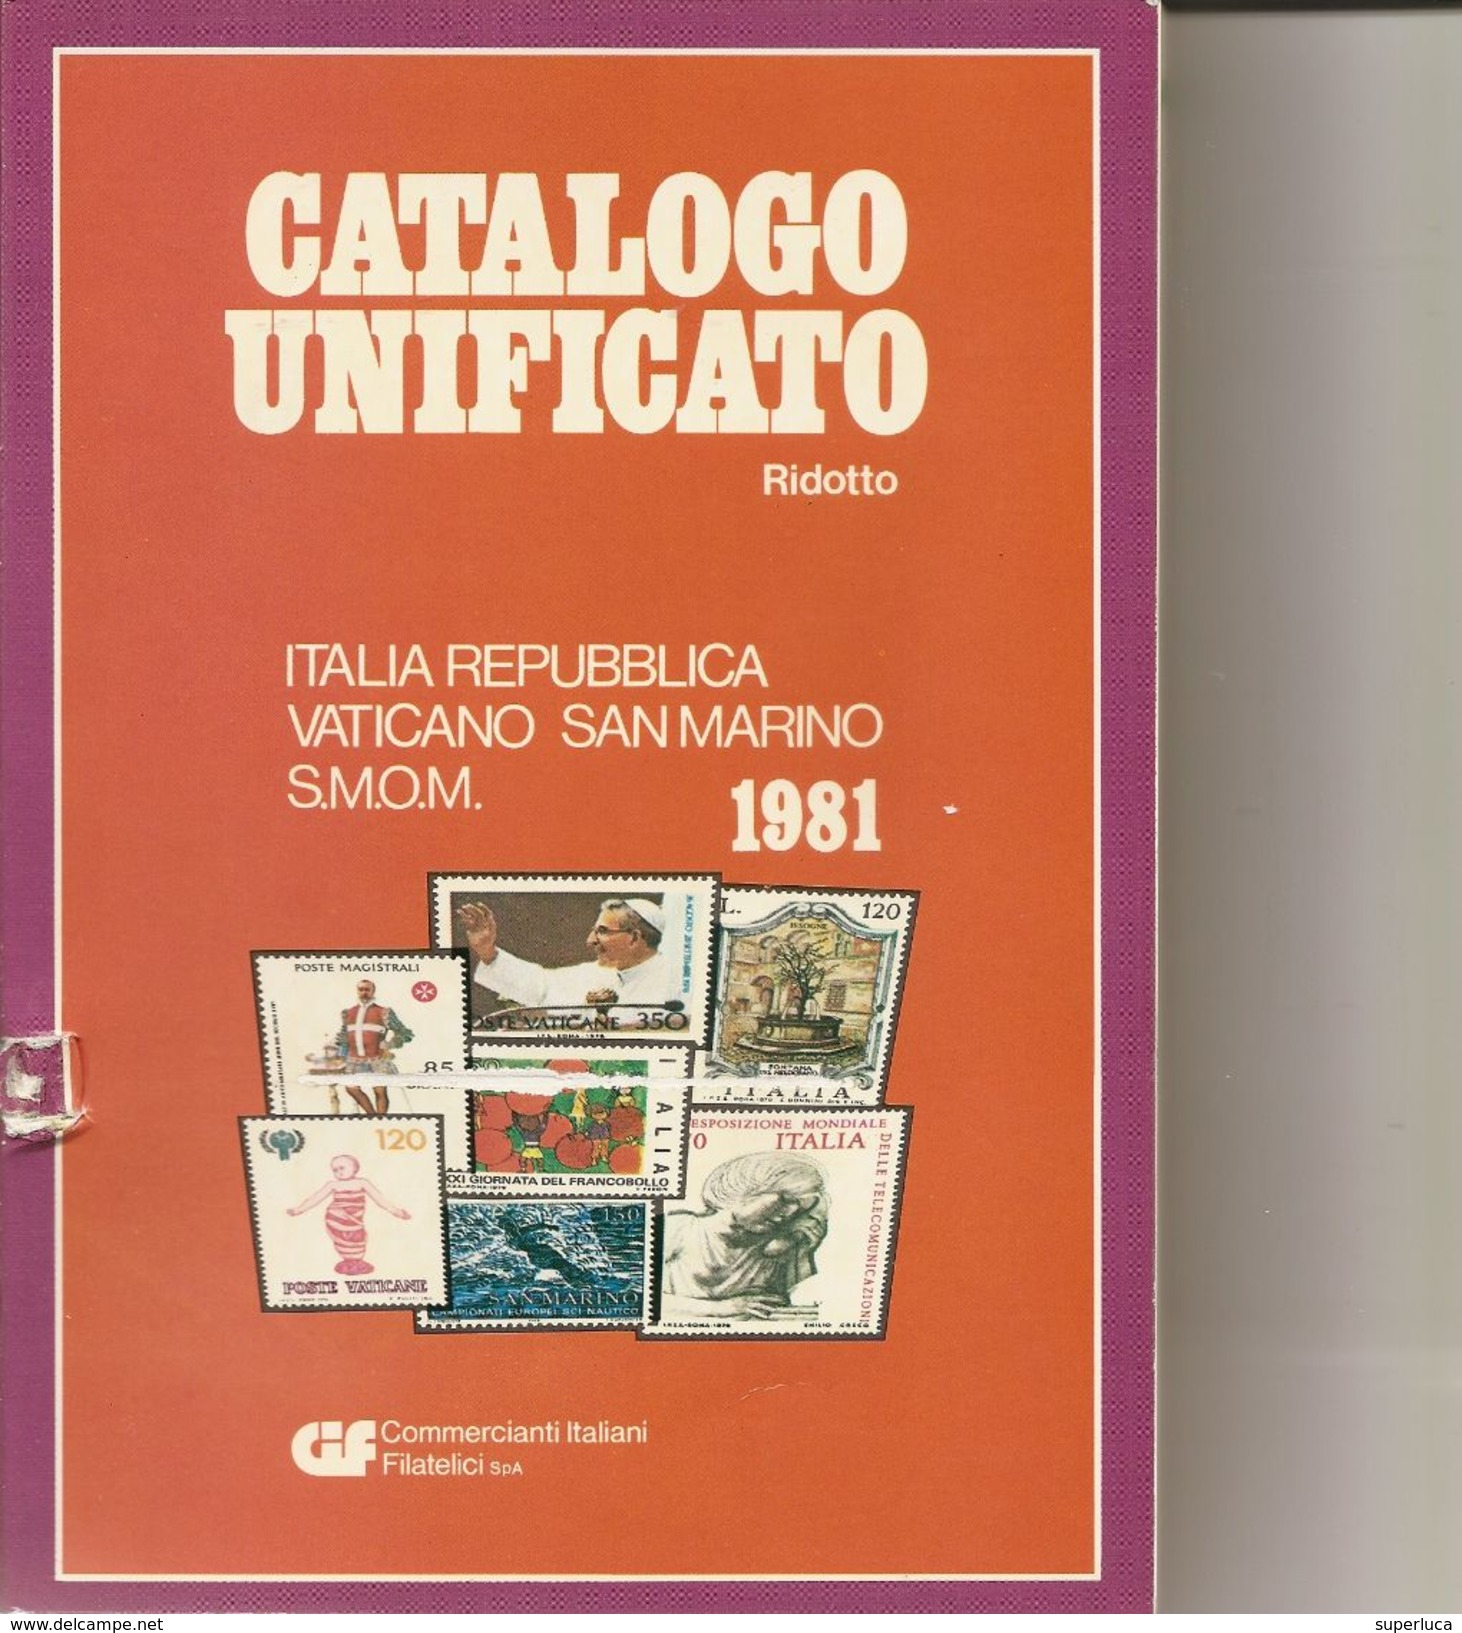 2-CATALOGO BOLAFFI 1967-FRANCOBOLLI ITALIANI+CATALOGO UNIFICATORIDOTTO 1981(OMAGGIO) - Italie